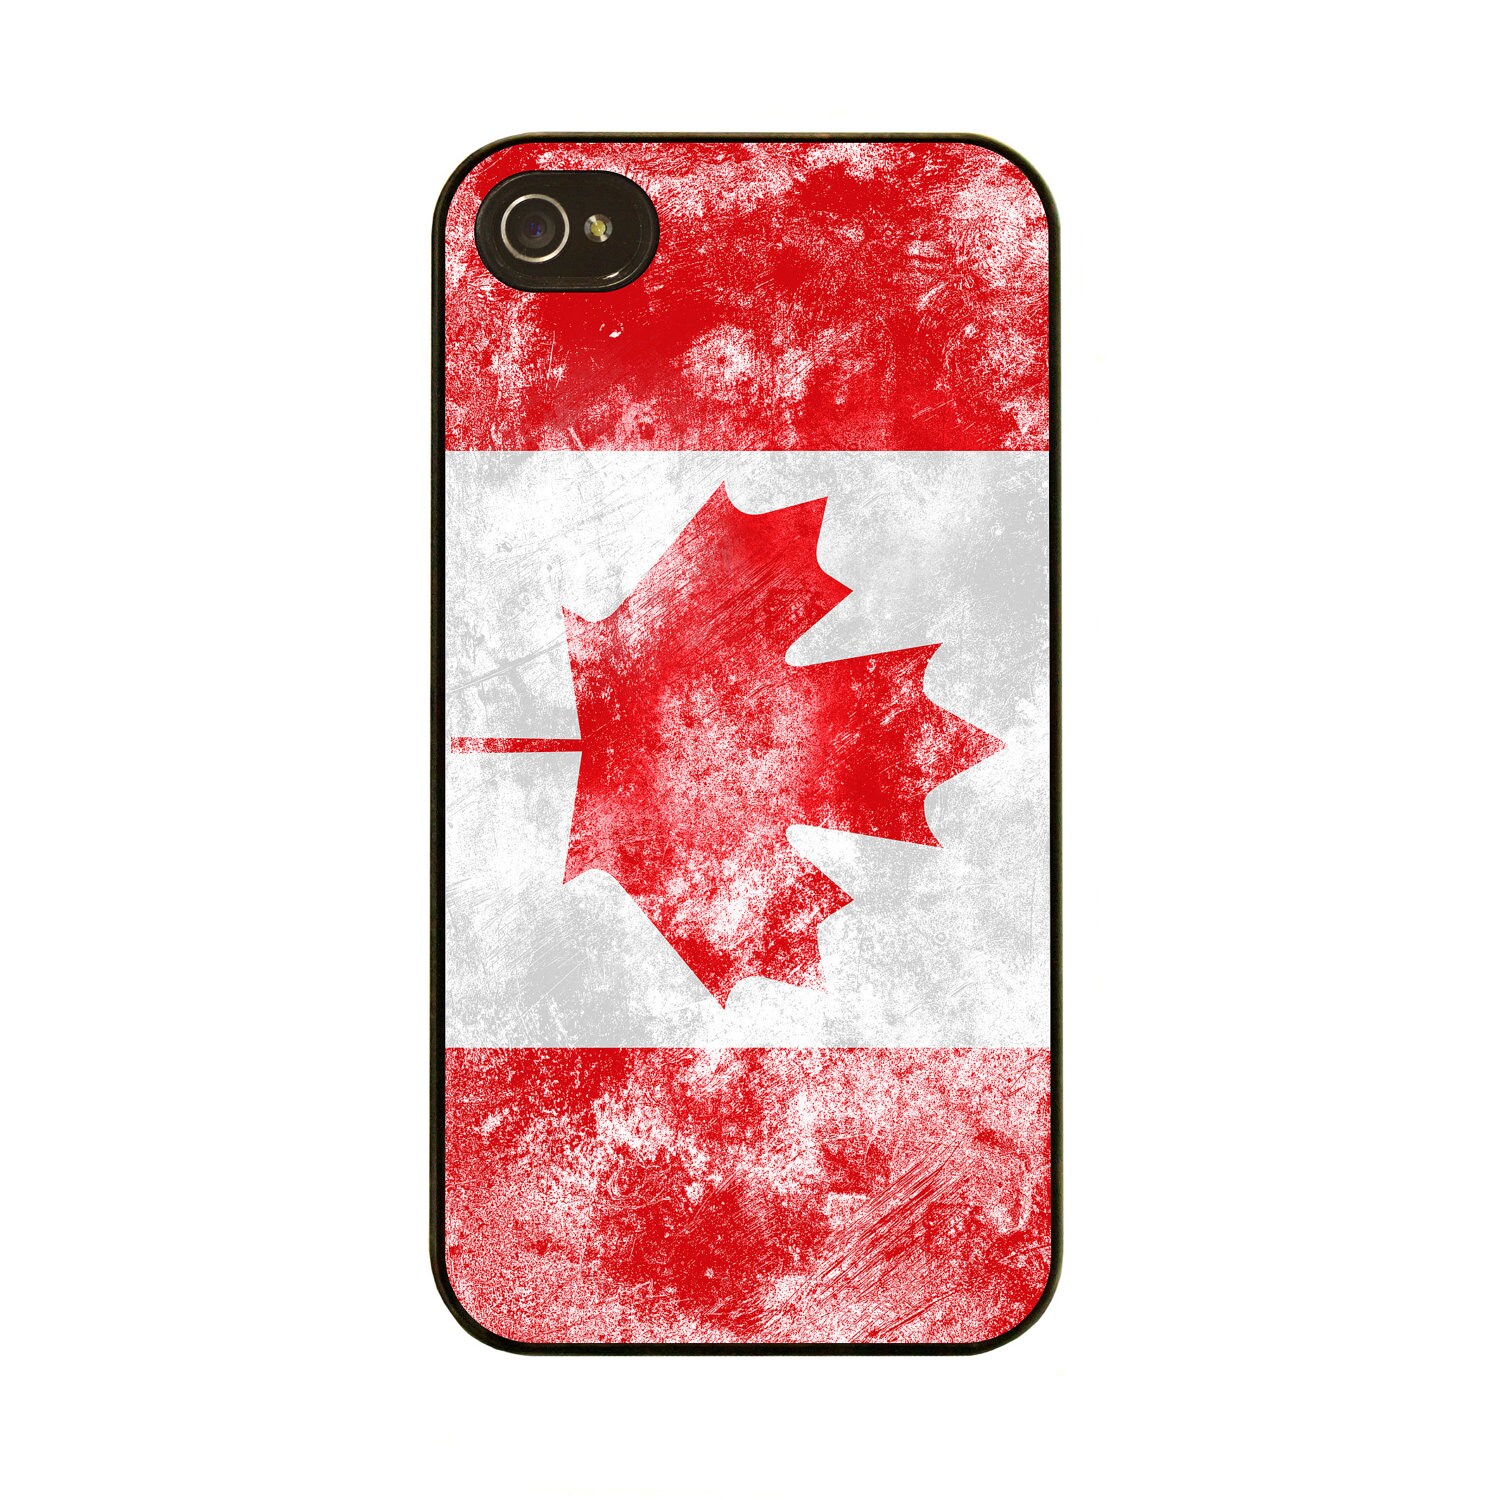 Iphone 4s Cases Canada